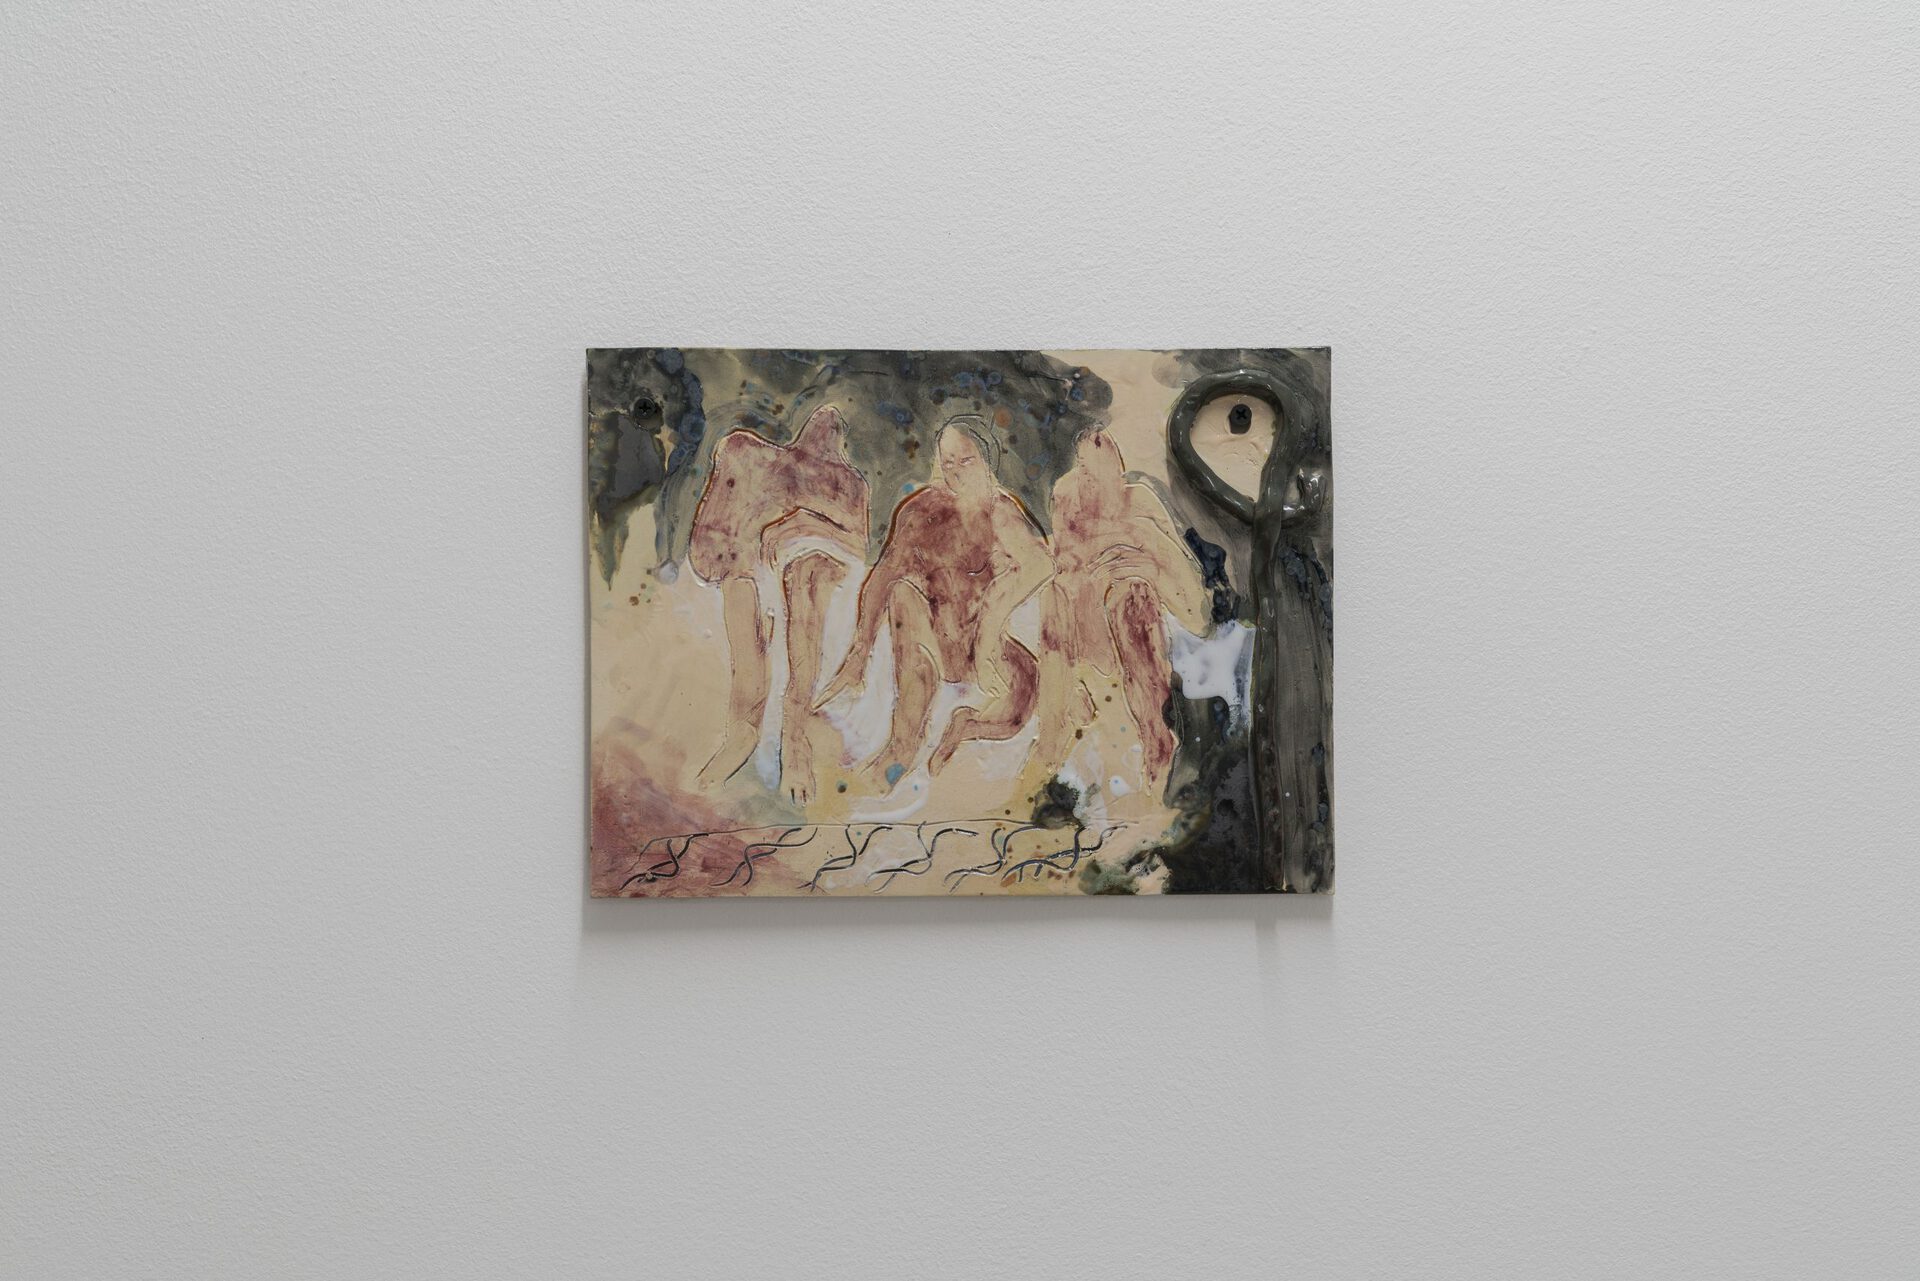 Friends, 2020, glazed ceramic, 21 x 28.5 x 1.5 cm